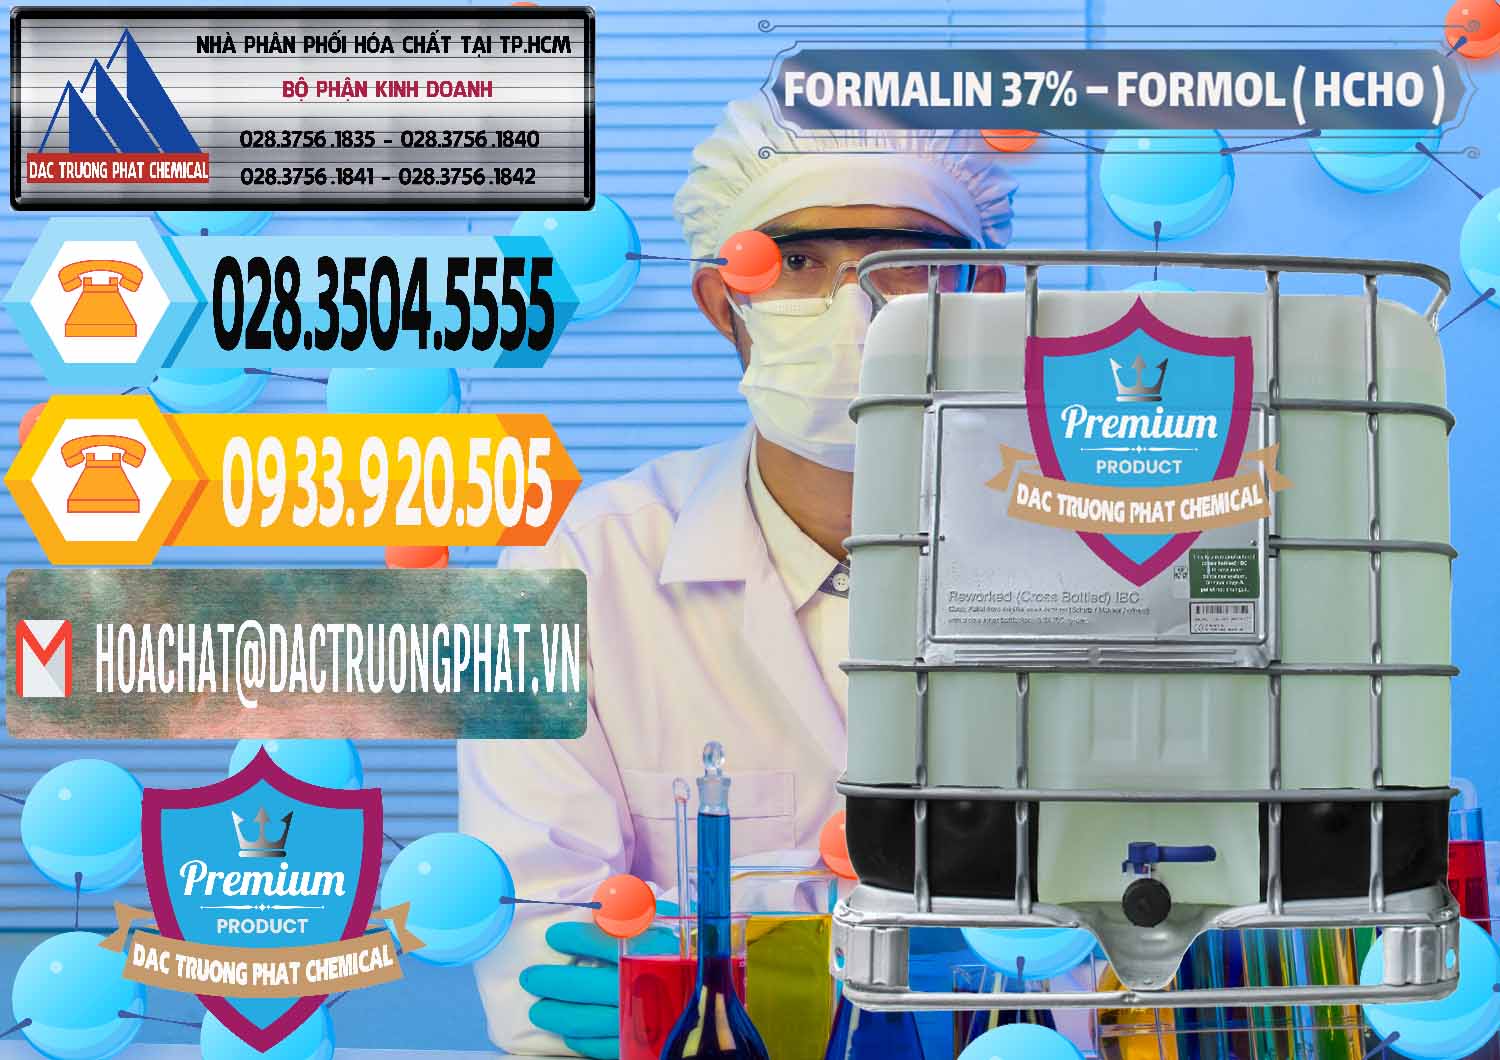 Cty cung ứng và bán Formalin - Formol ( HCHO ) 37% Việt Nam - 0187 - Nơi kinh doanh và bán hóa chất tại TP.HCM - hoachattayrua.net